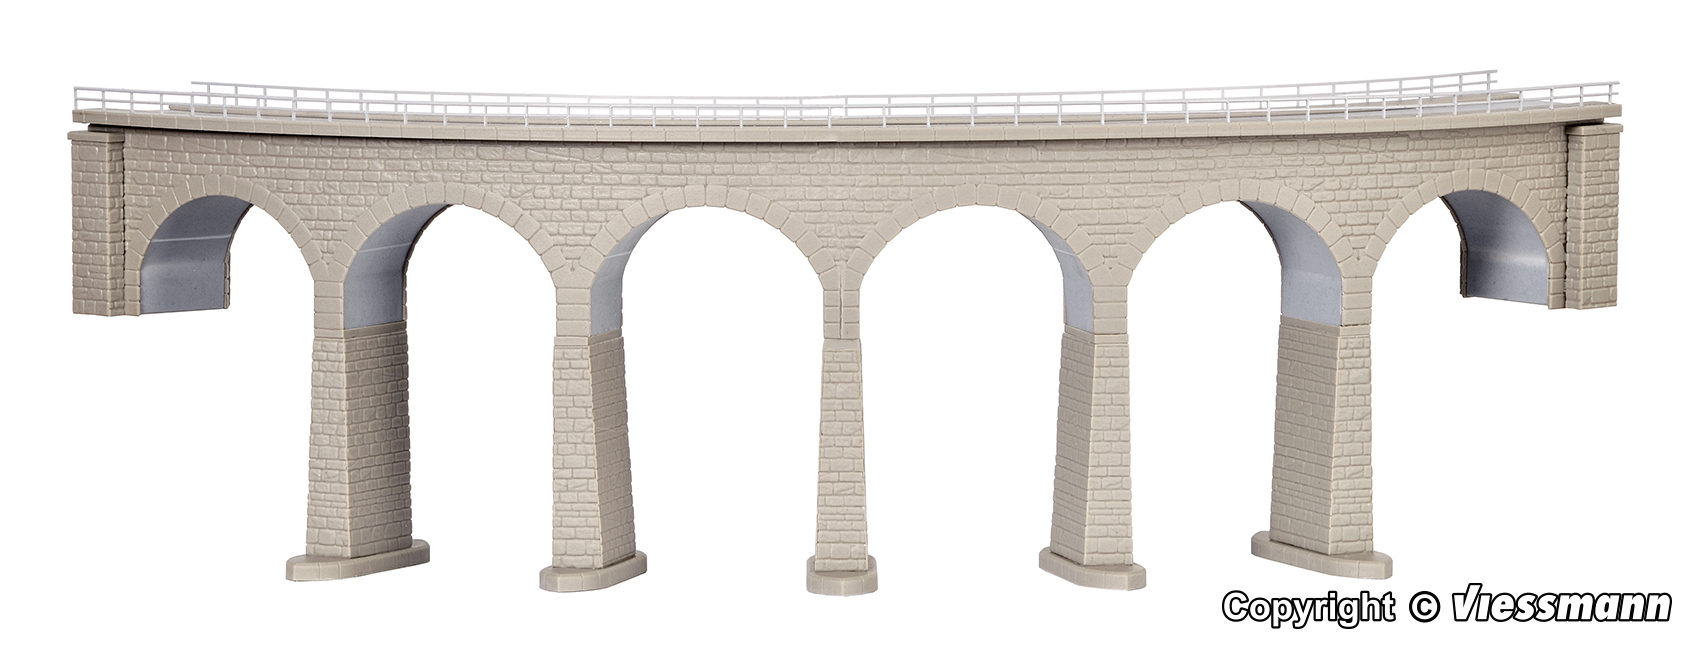 Albula-Viadukt mit Eisbrecherfundamenten, gebogen, eingleisig, N/Z